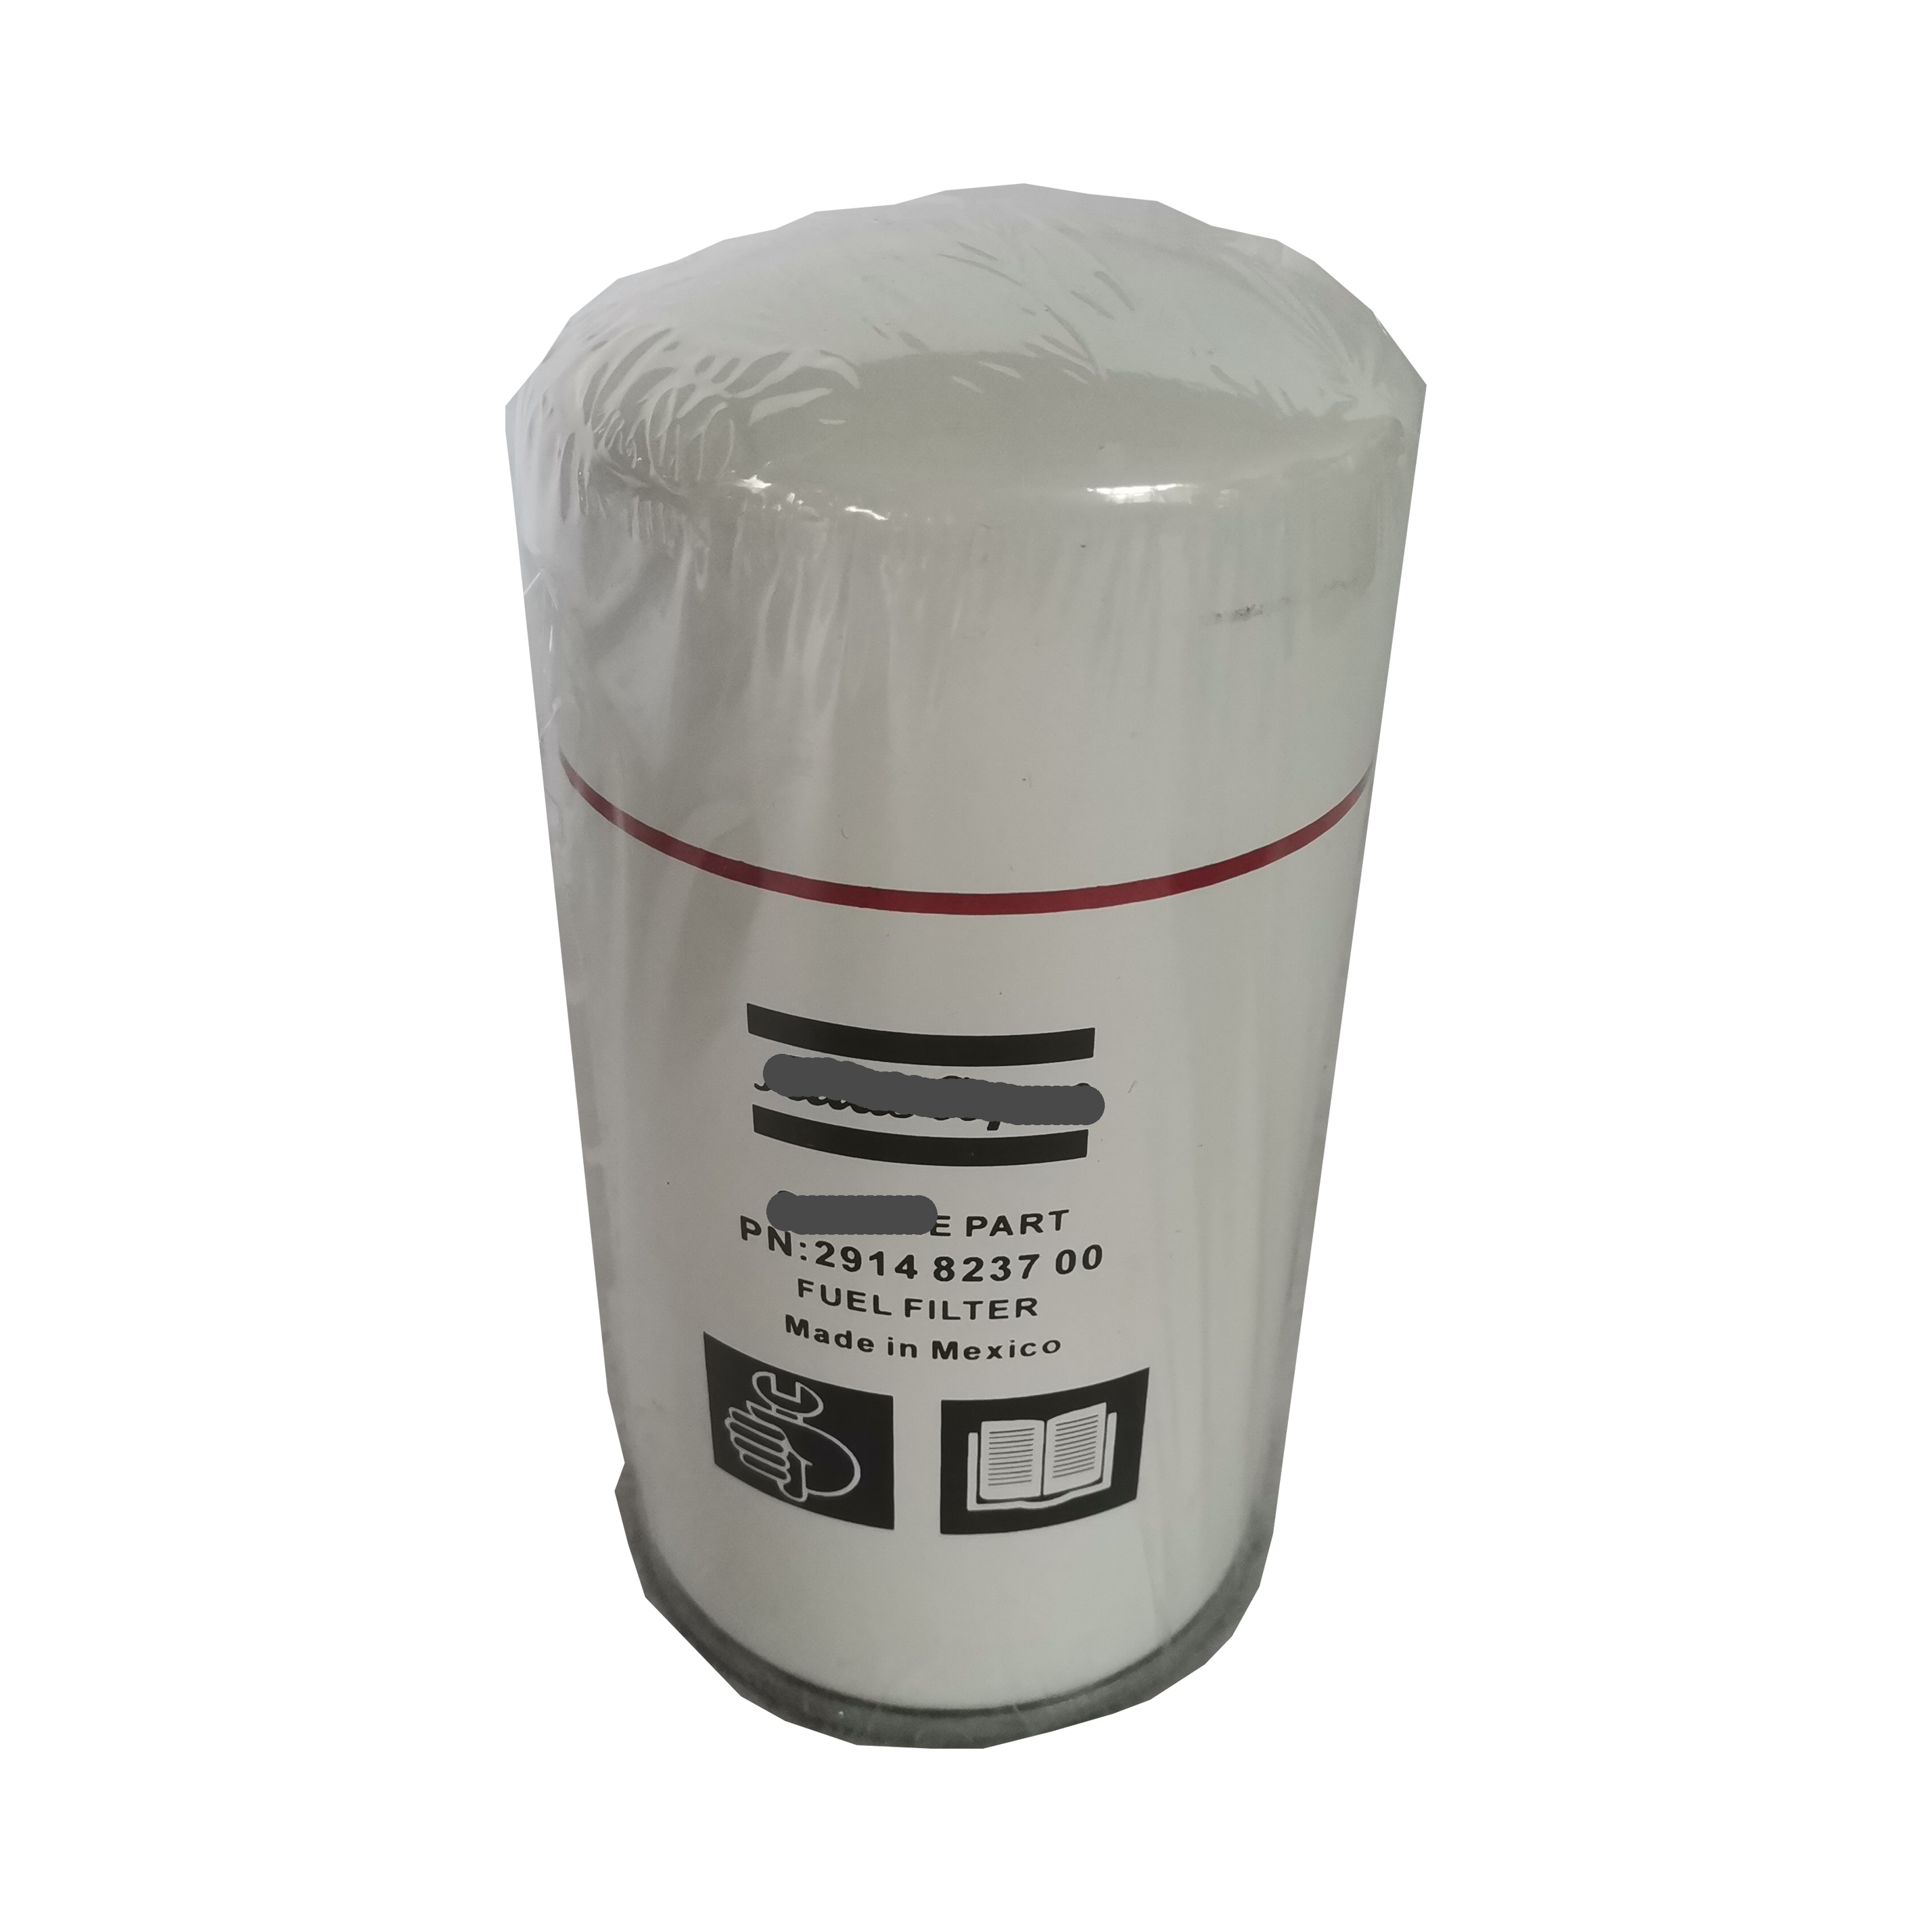 I-Wholesale esikhundleni se-Atlas Copco Filter Element for Air Compressor Oil Filter 2914866000 2914823600 2914823700